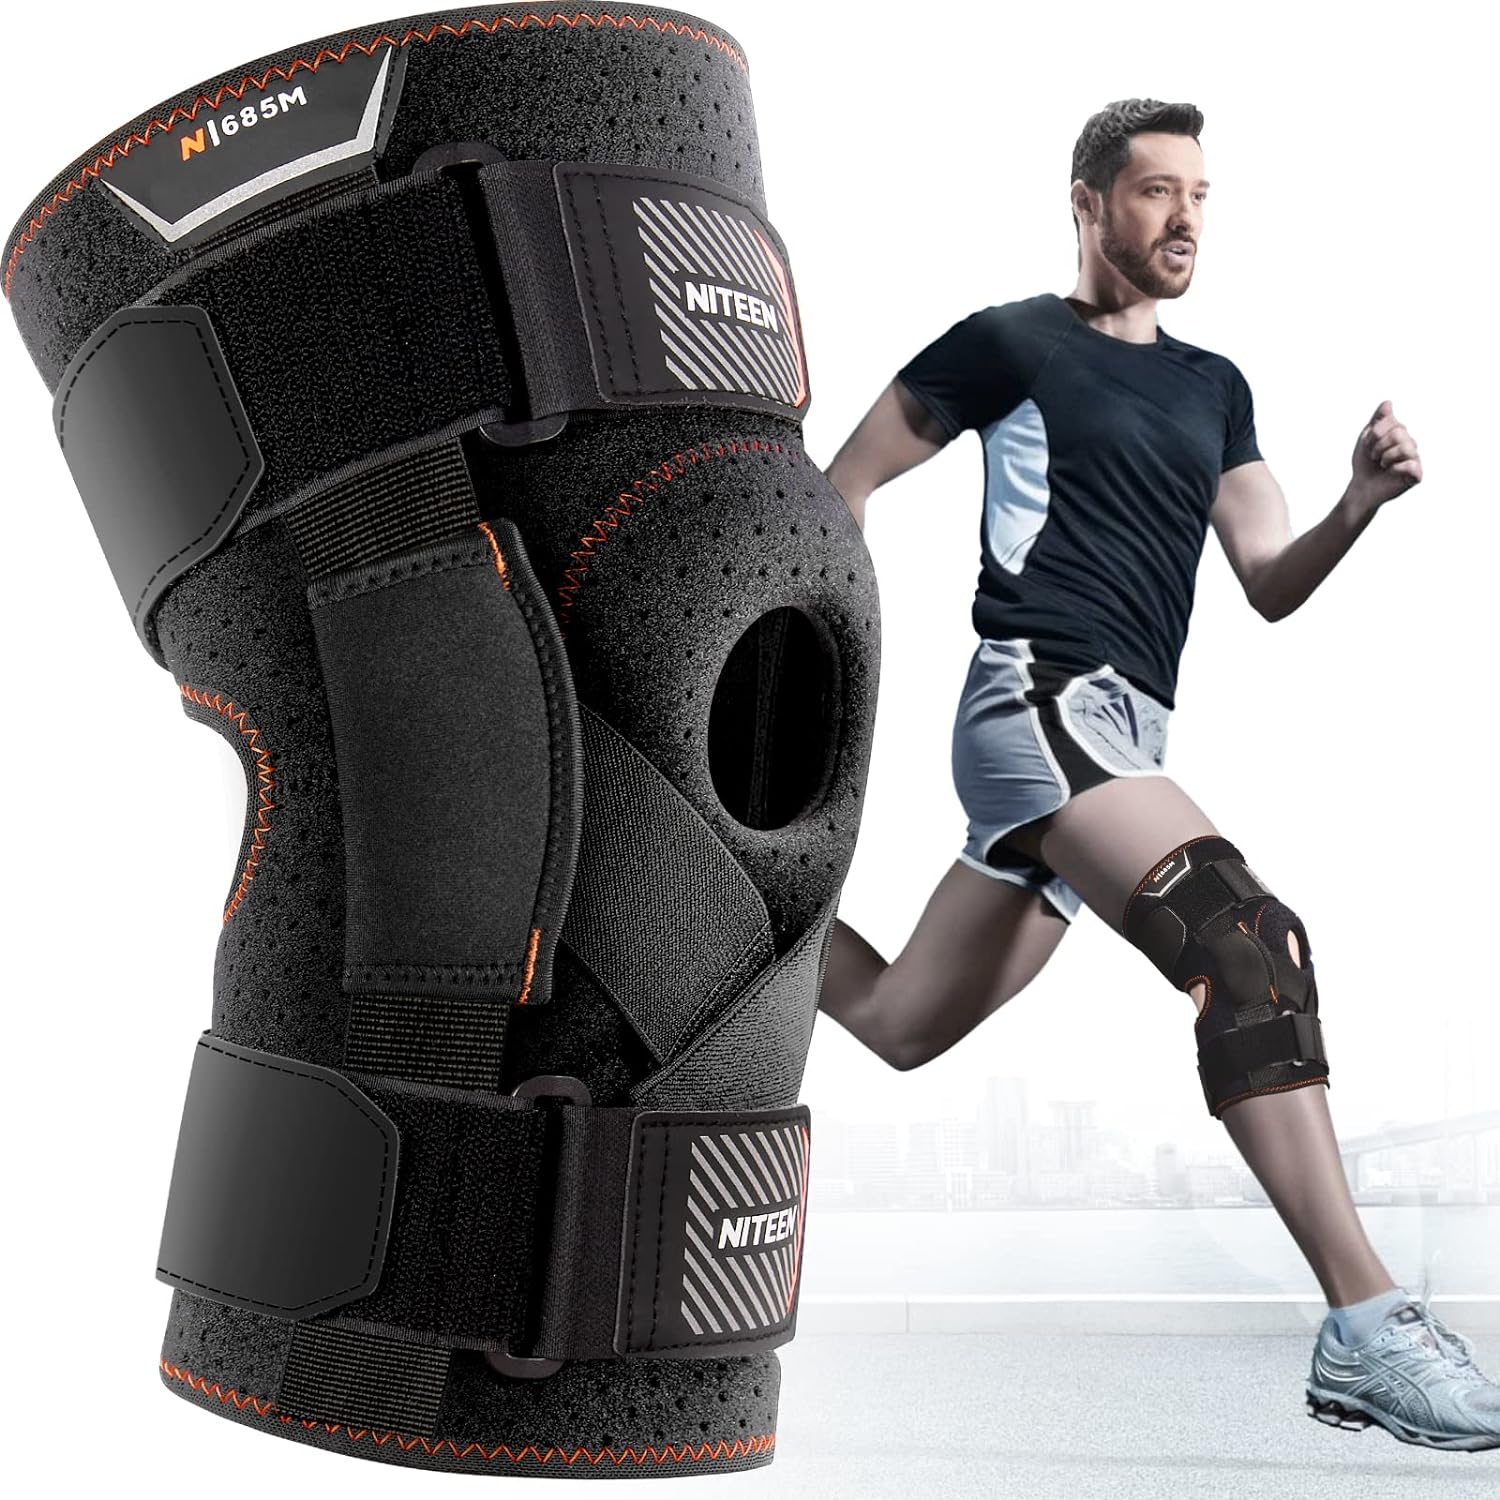 Orthopädische Knieorthese mit Gelenk REAQER ROM Post OP: Knie-Wegfahrsperre & perfekte Unterstützung